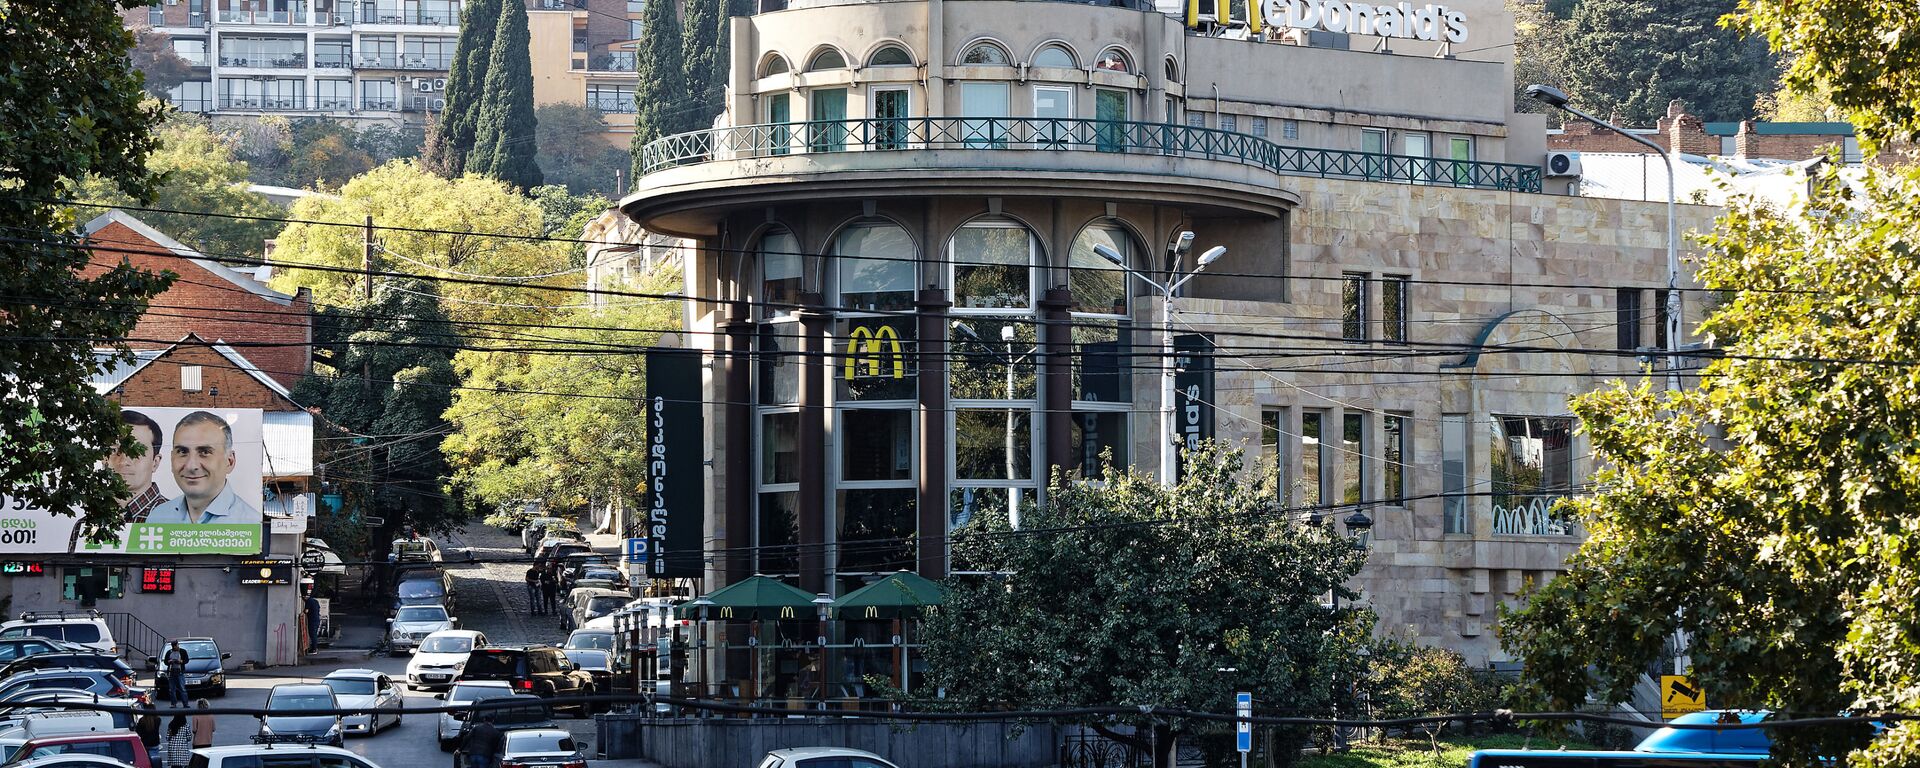 Вид на город Тбилиси - ресторан МакДональдс на проспекте Руставели - Sputnik Грузия, 1920, 30.10.2020